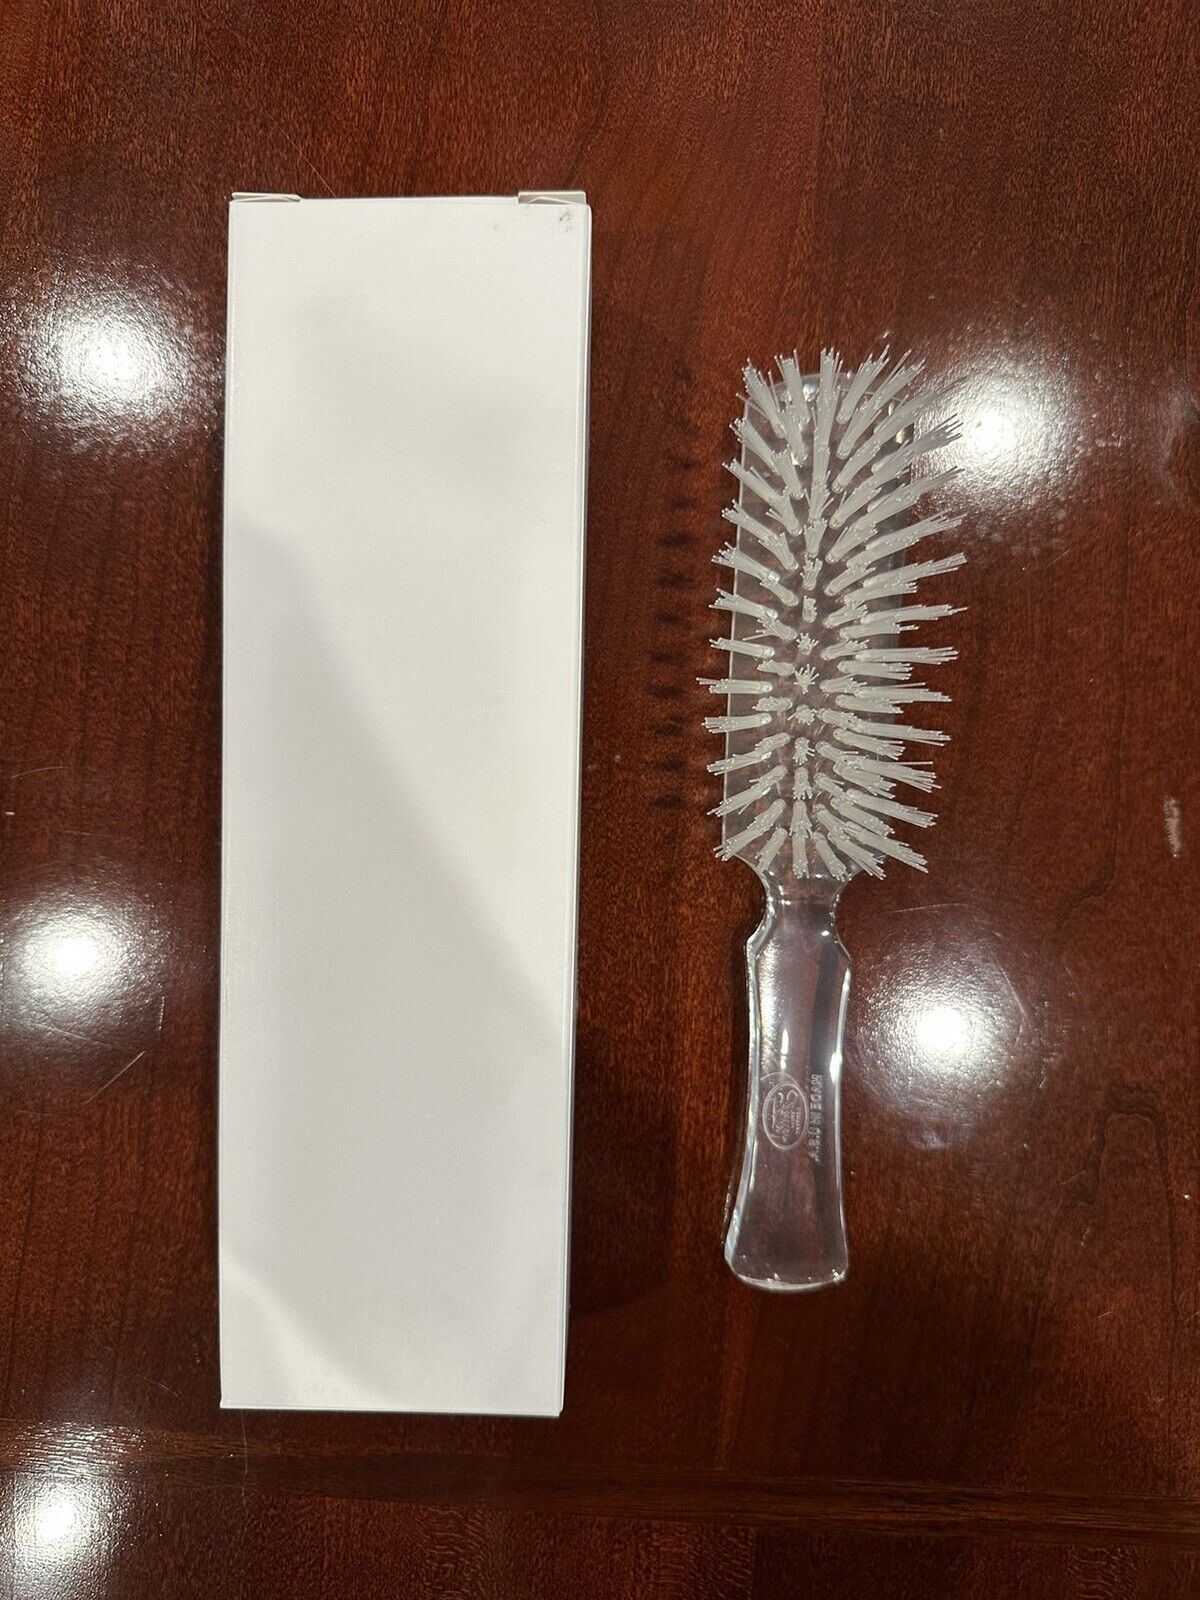 NEW Vintage FULLER Brush Hairbrush #531